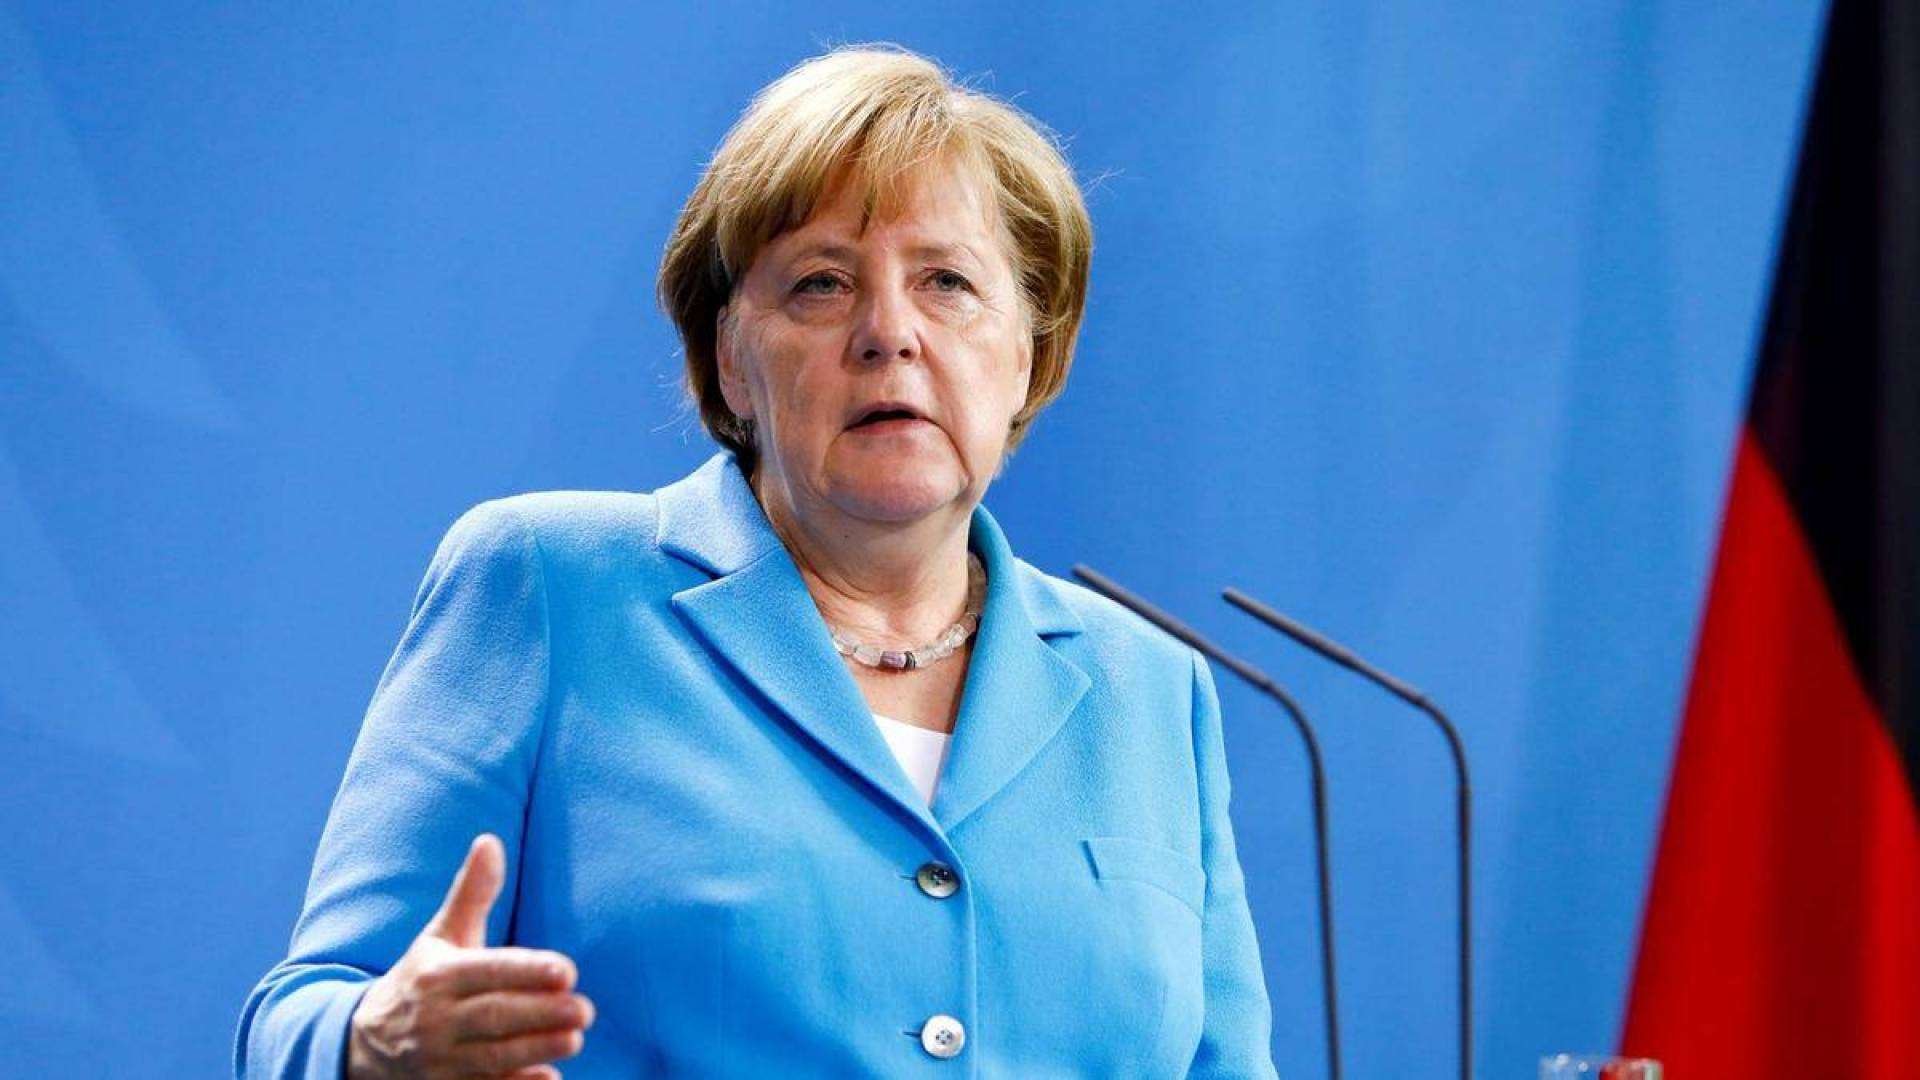 Merkel tests negative for coronavirus